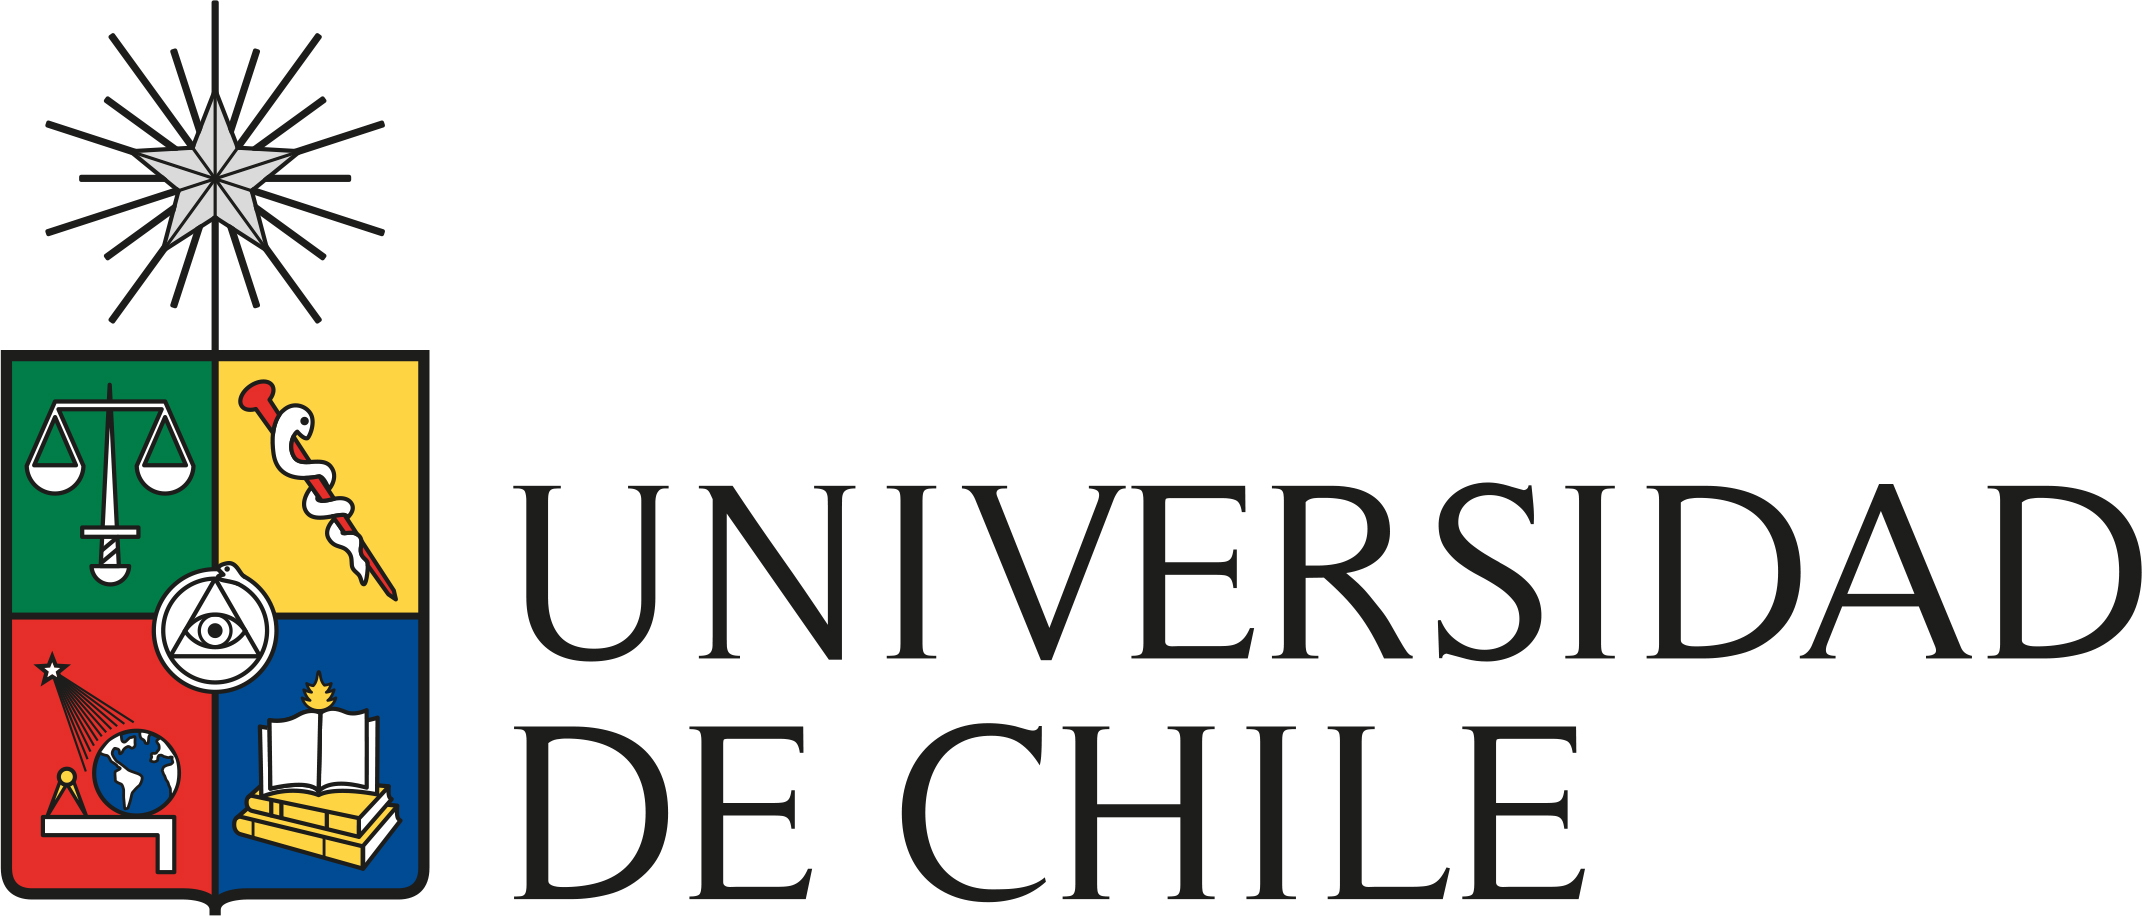 Escudo Universidad de Chile horizontal en color